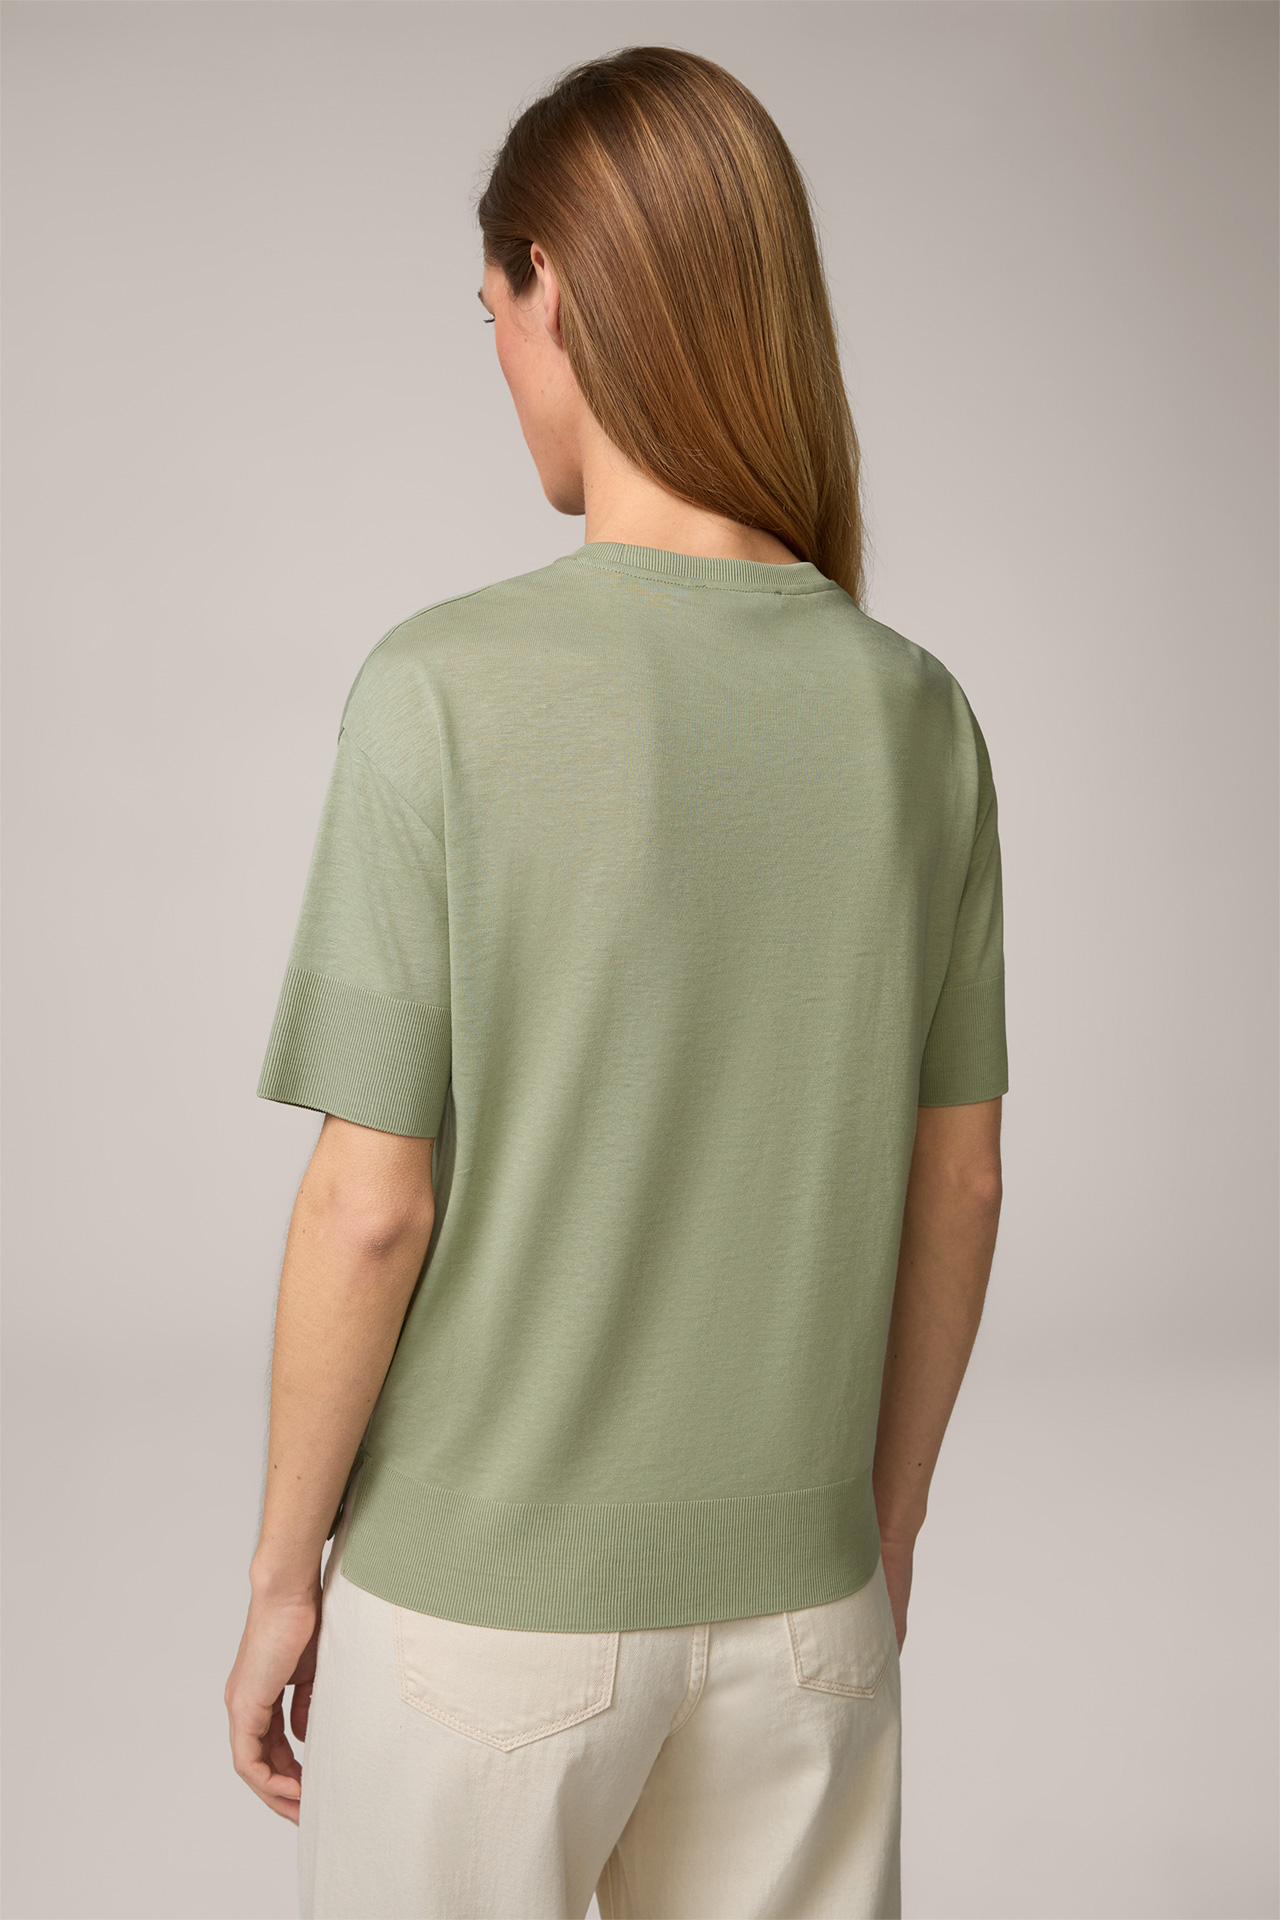 T-shirt en Tencel et coton, couleur sauge